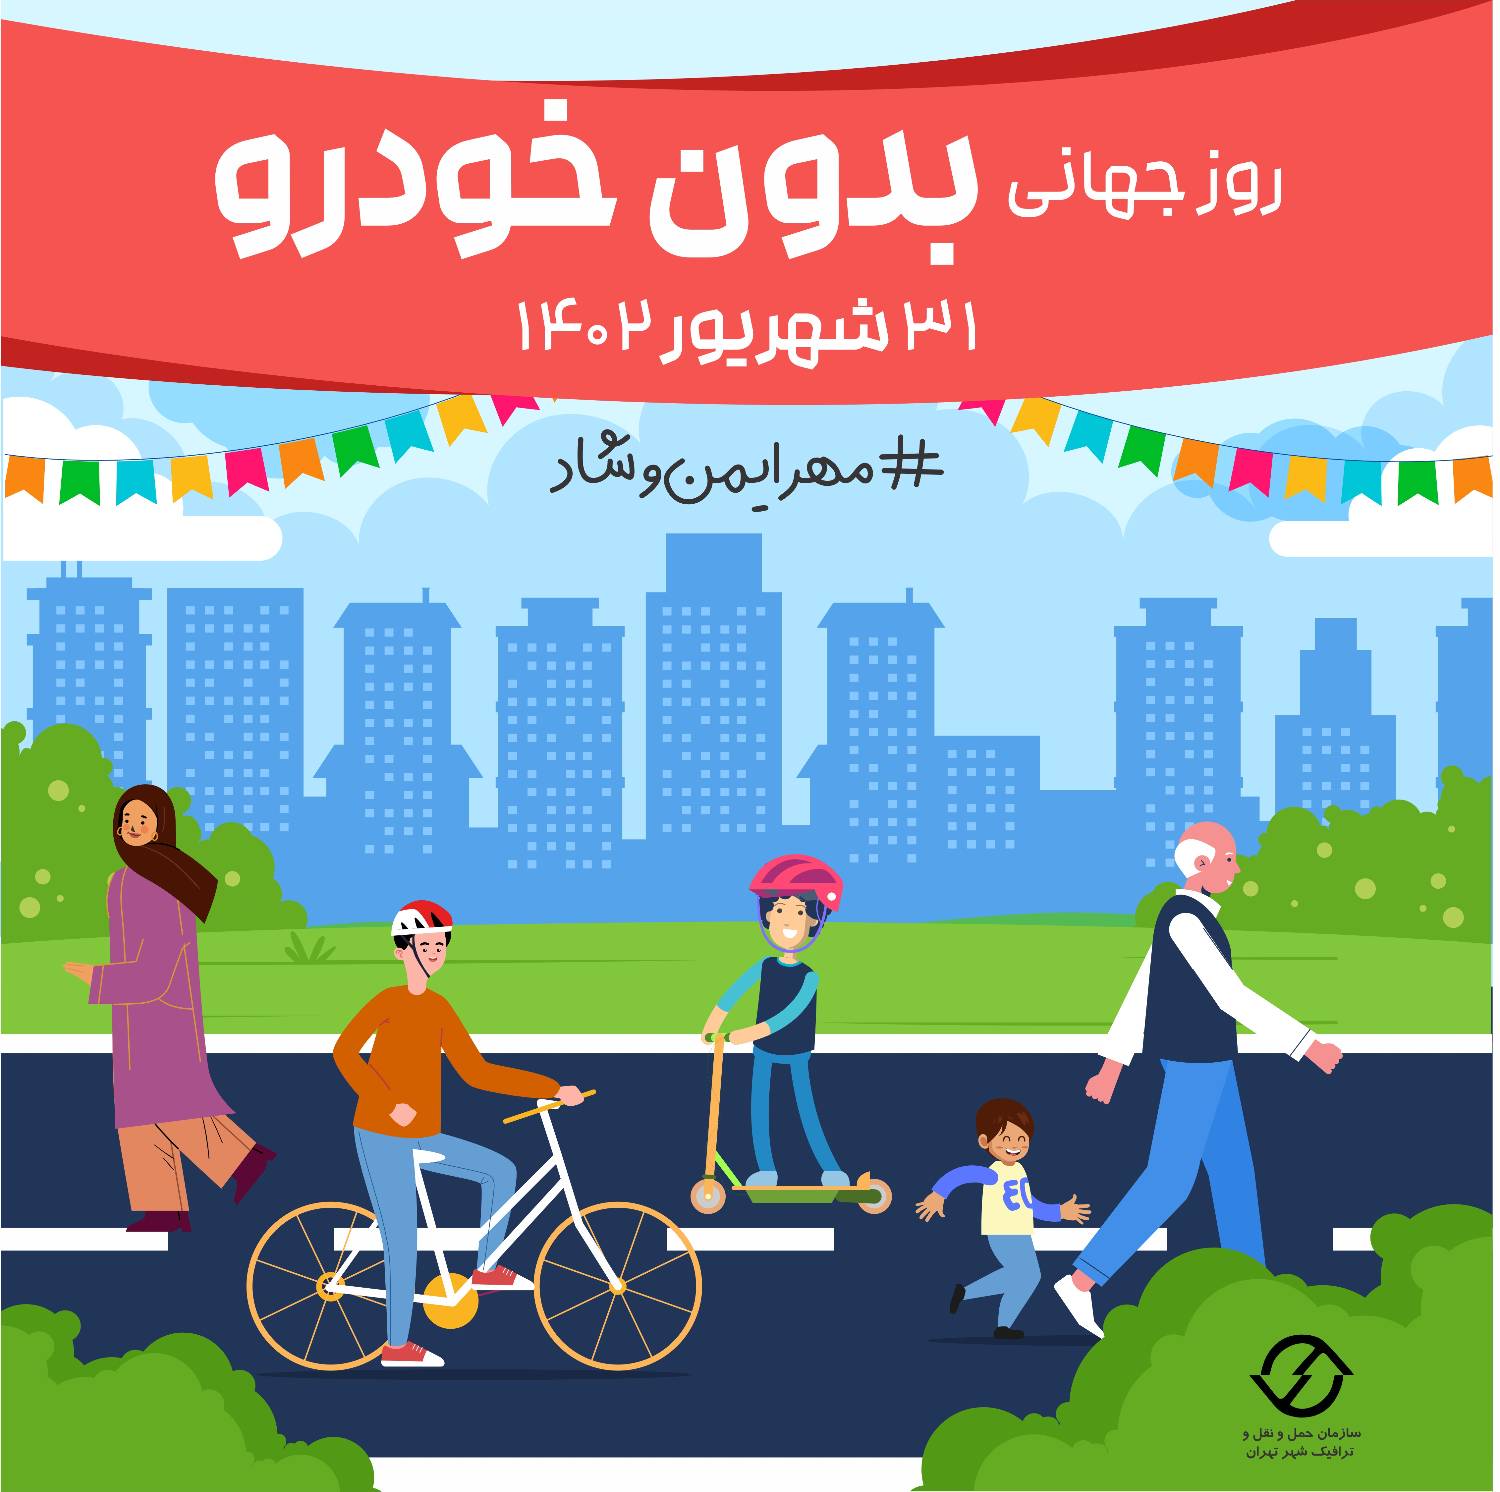 تجربه روز بدون خودرو برای شهروندان منطقه2 در خیابان ایران زمین